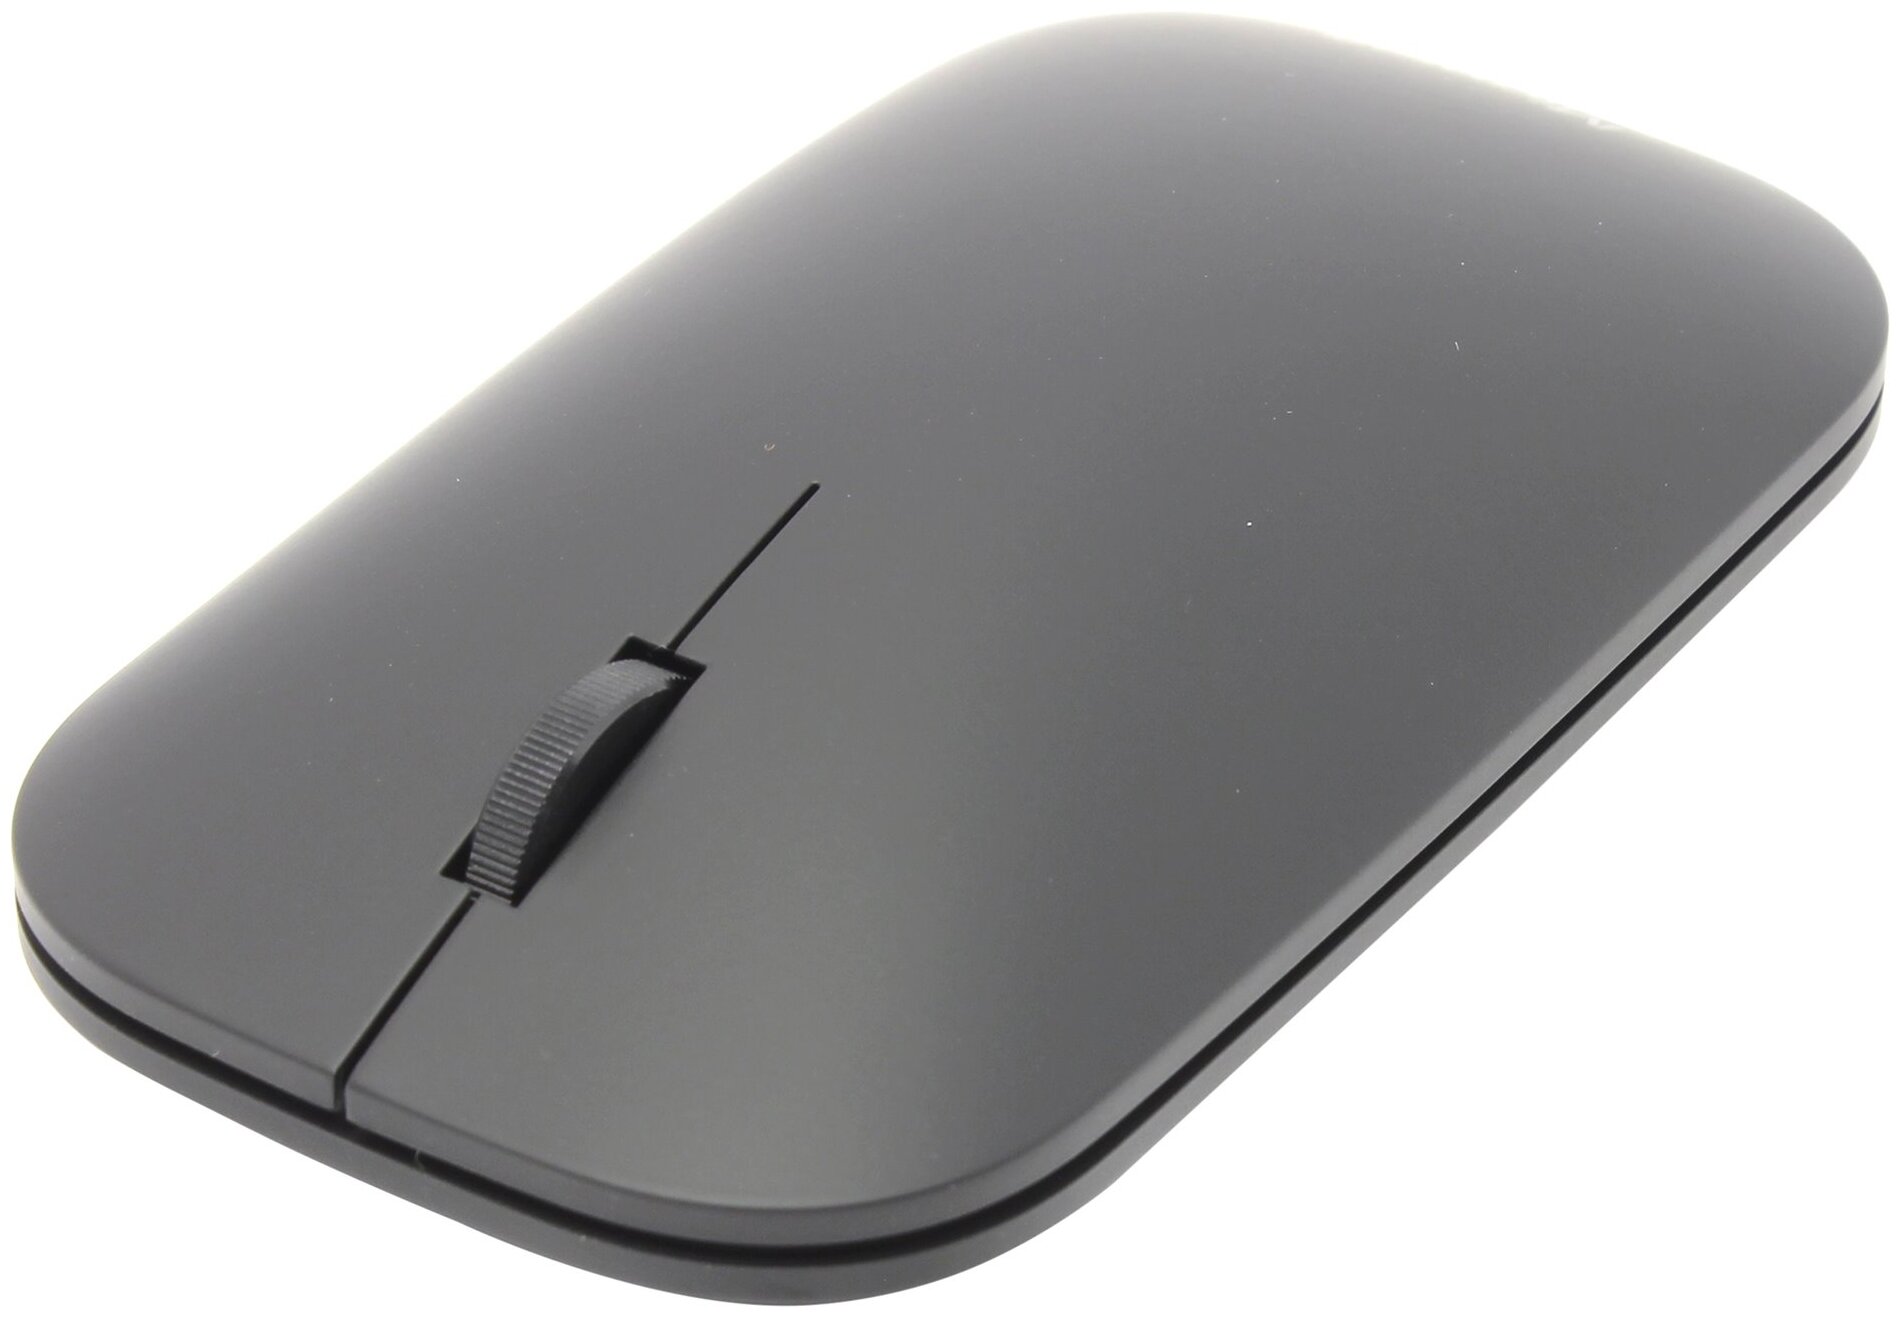 Клавиатура + мышь Microsoft Designer 7N9-00018 клав:черный мышь:черный Bluetooth